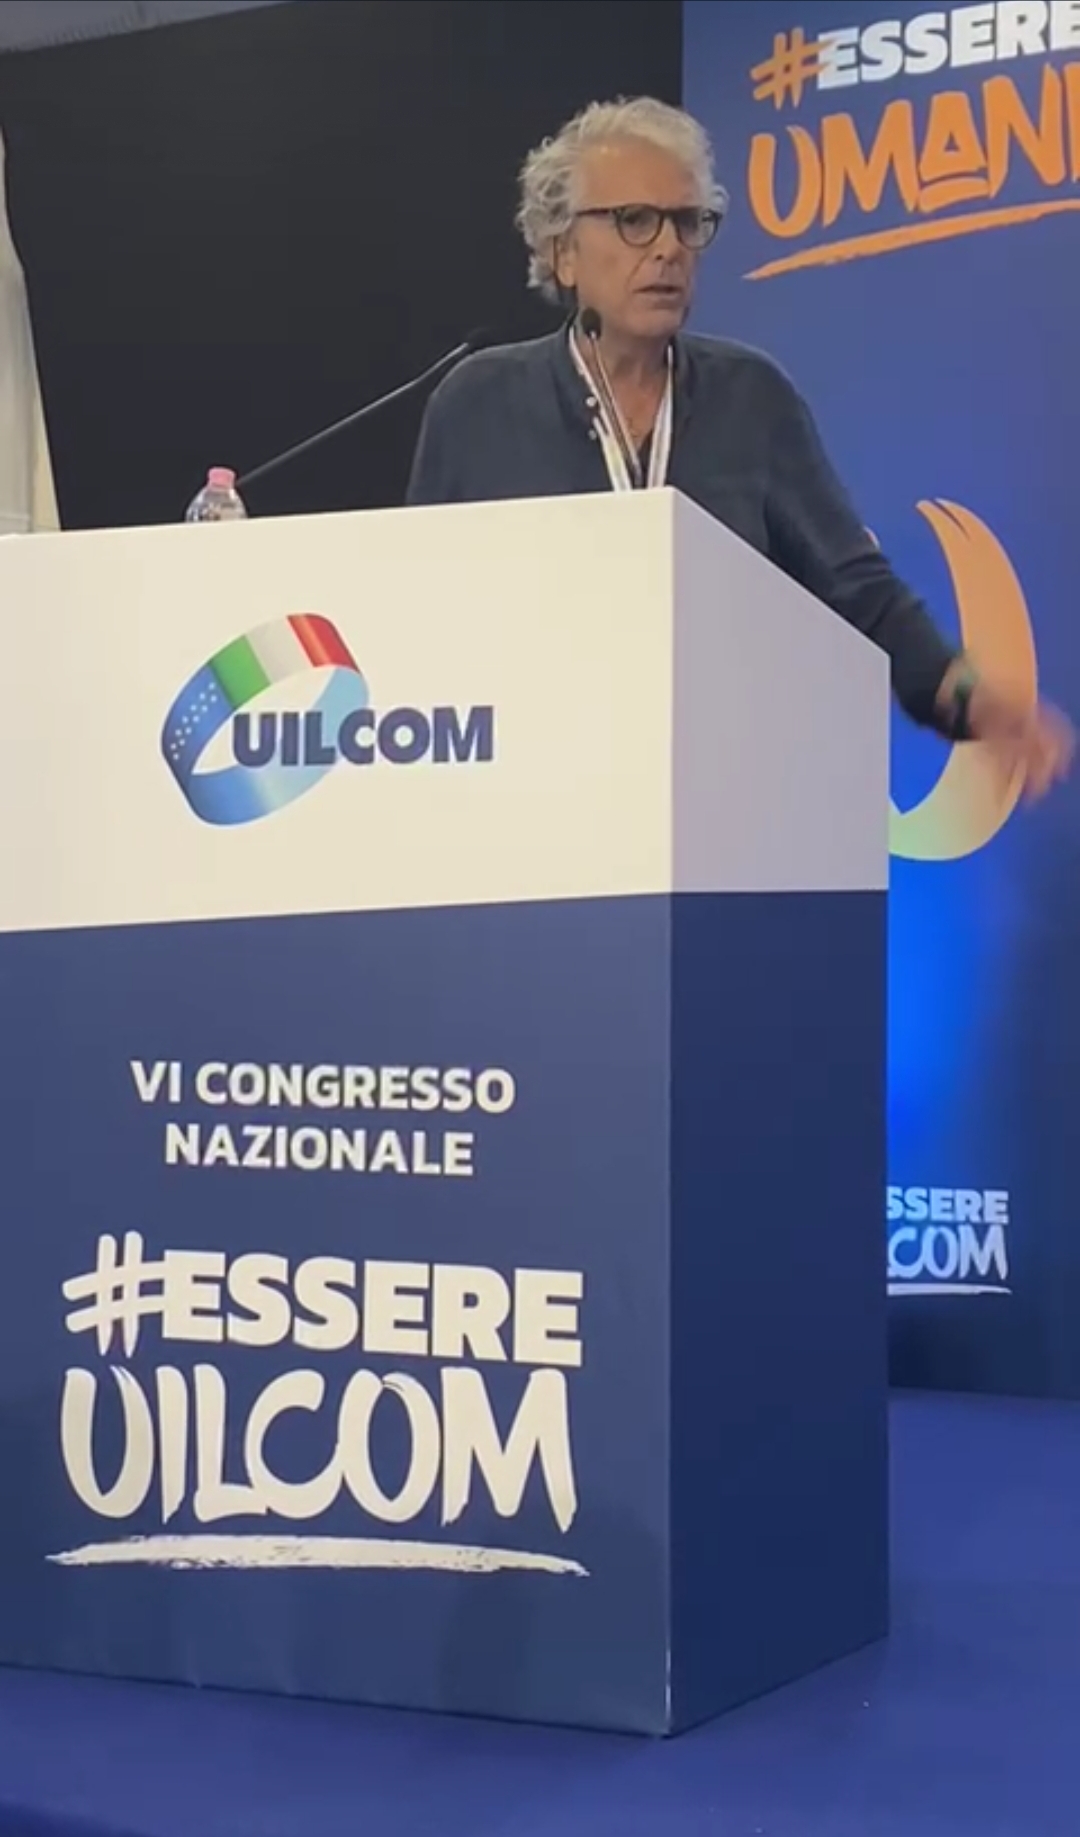 Francesco Silvano de Marsala elegido para el Consejo Nacional de Uilcom